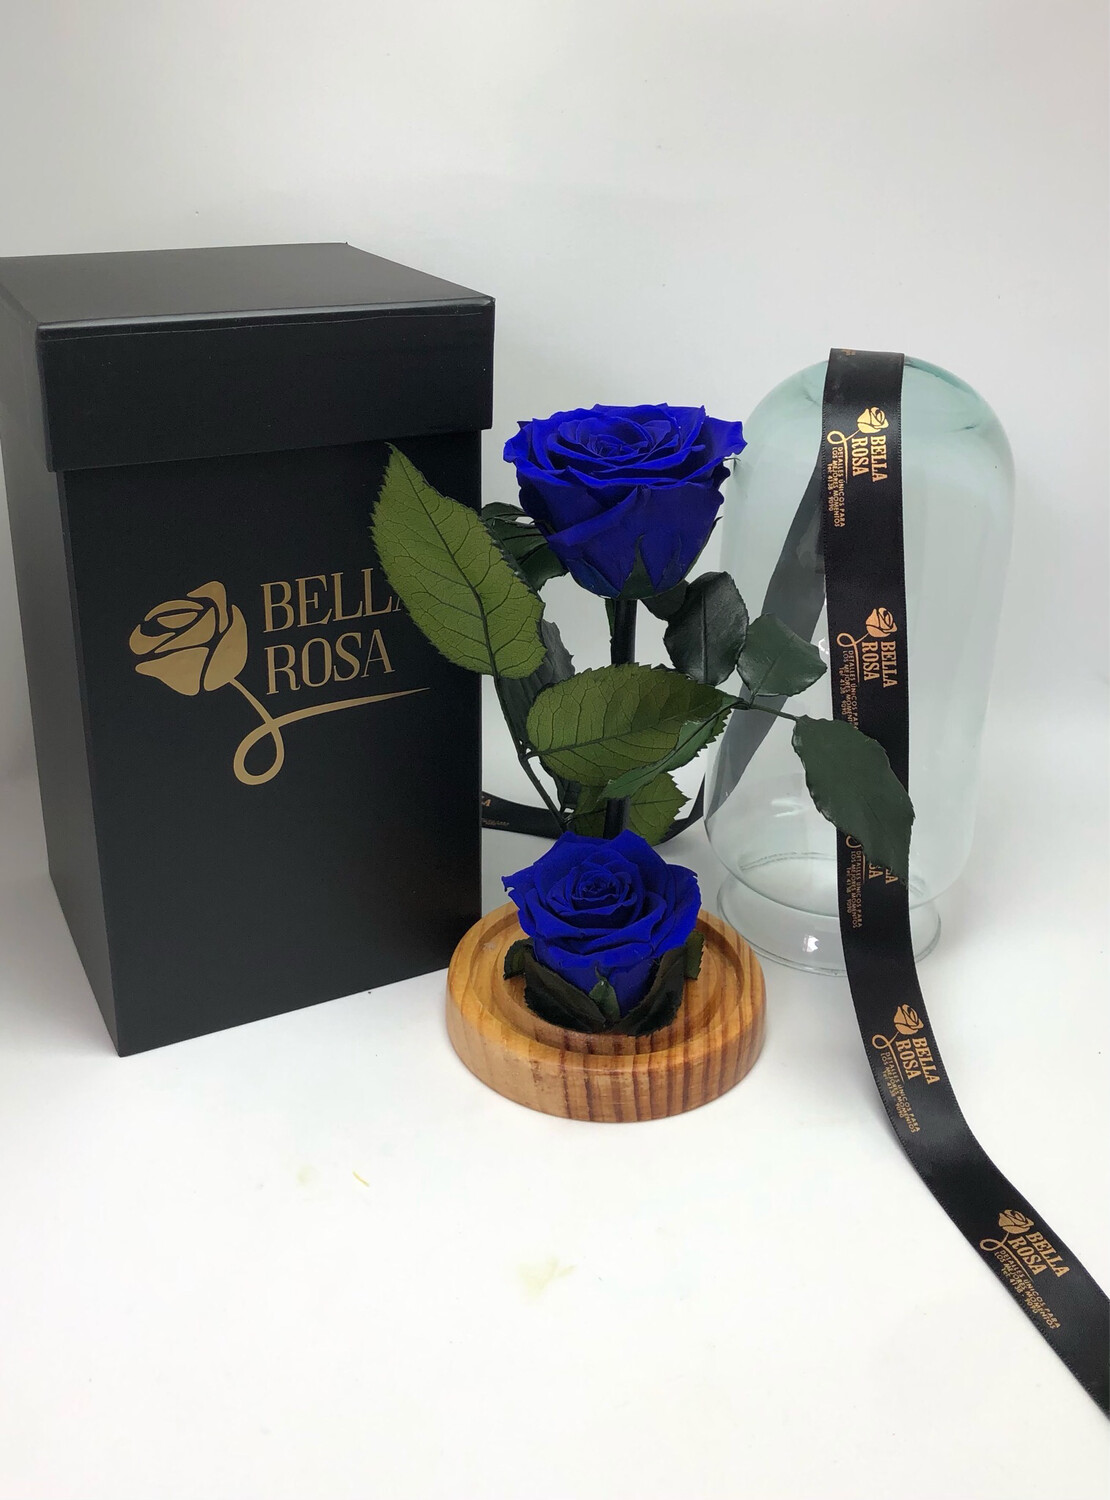 Cúpula de cristal de 22 cm de alto con 2 rosas preservadas